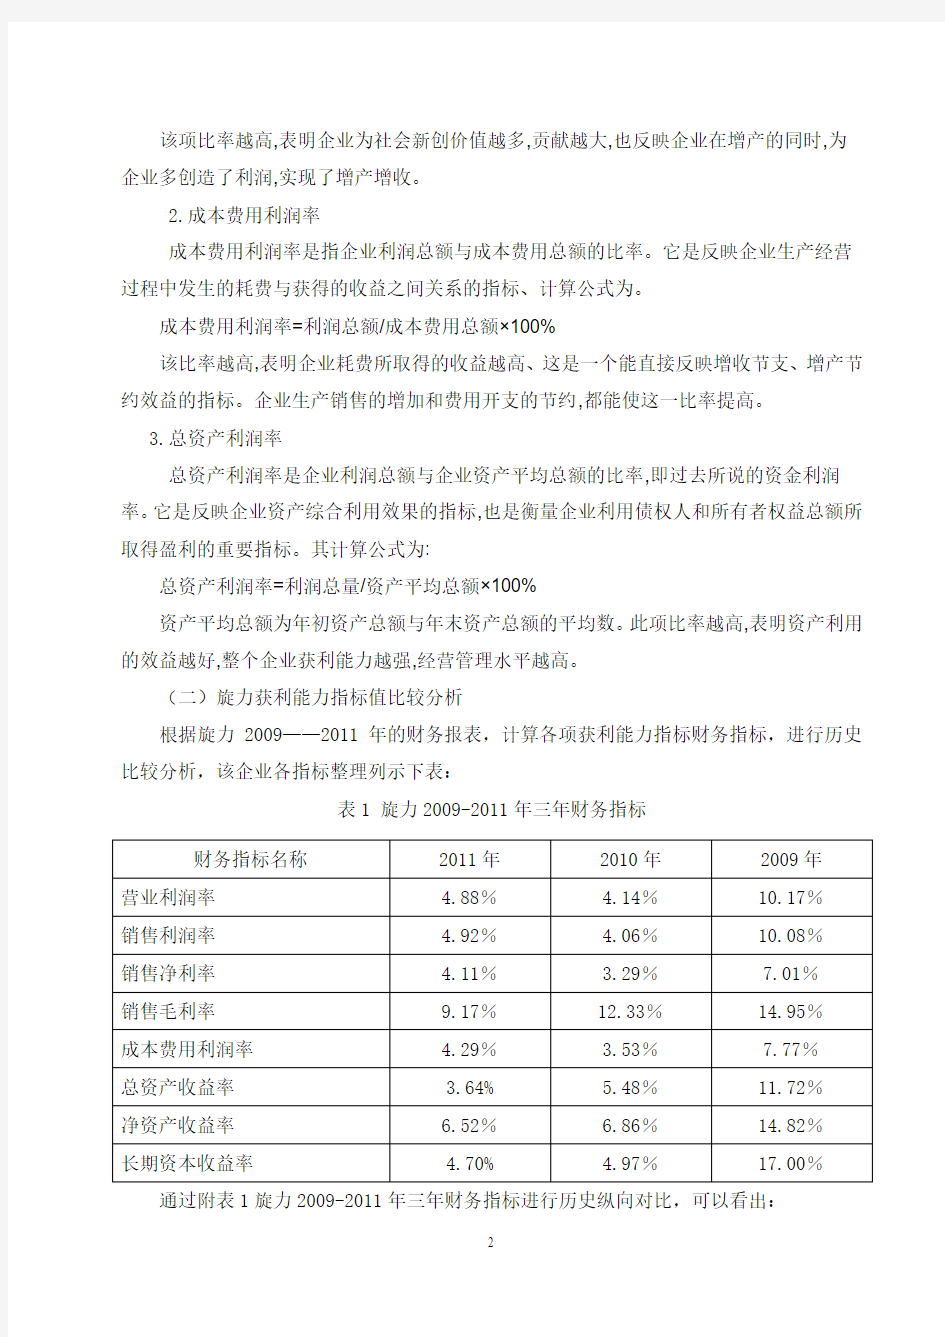 关于江苏旋力集团股份有限公司盈利能力的调研报告